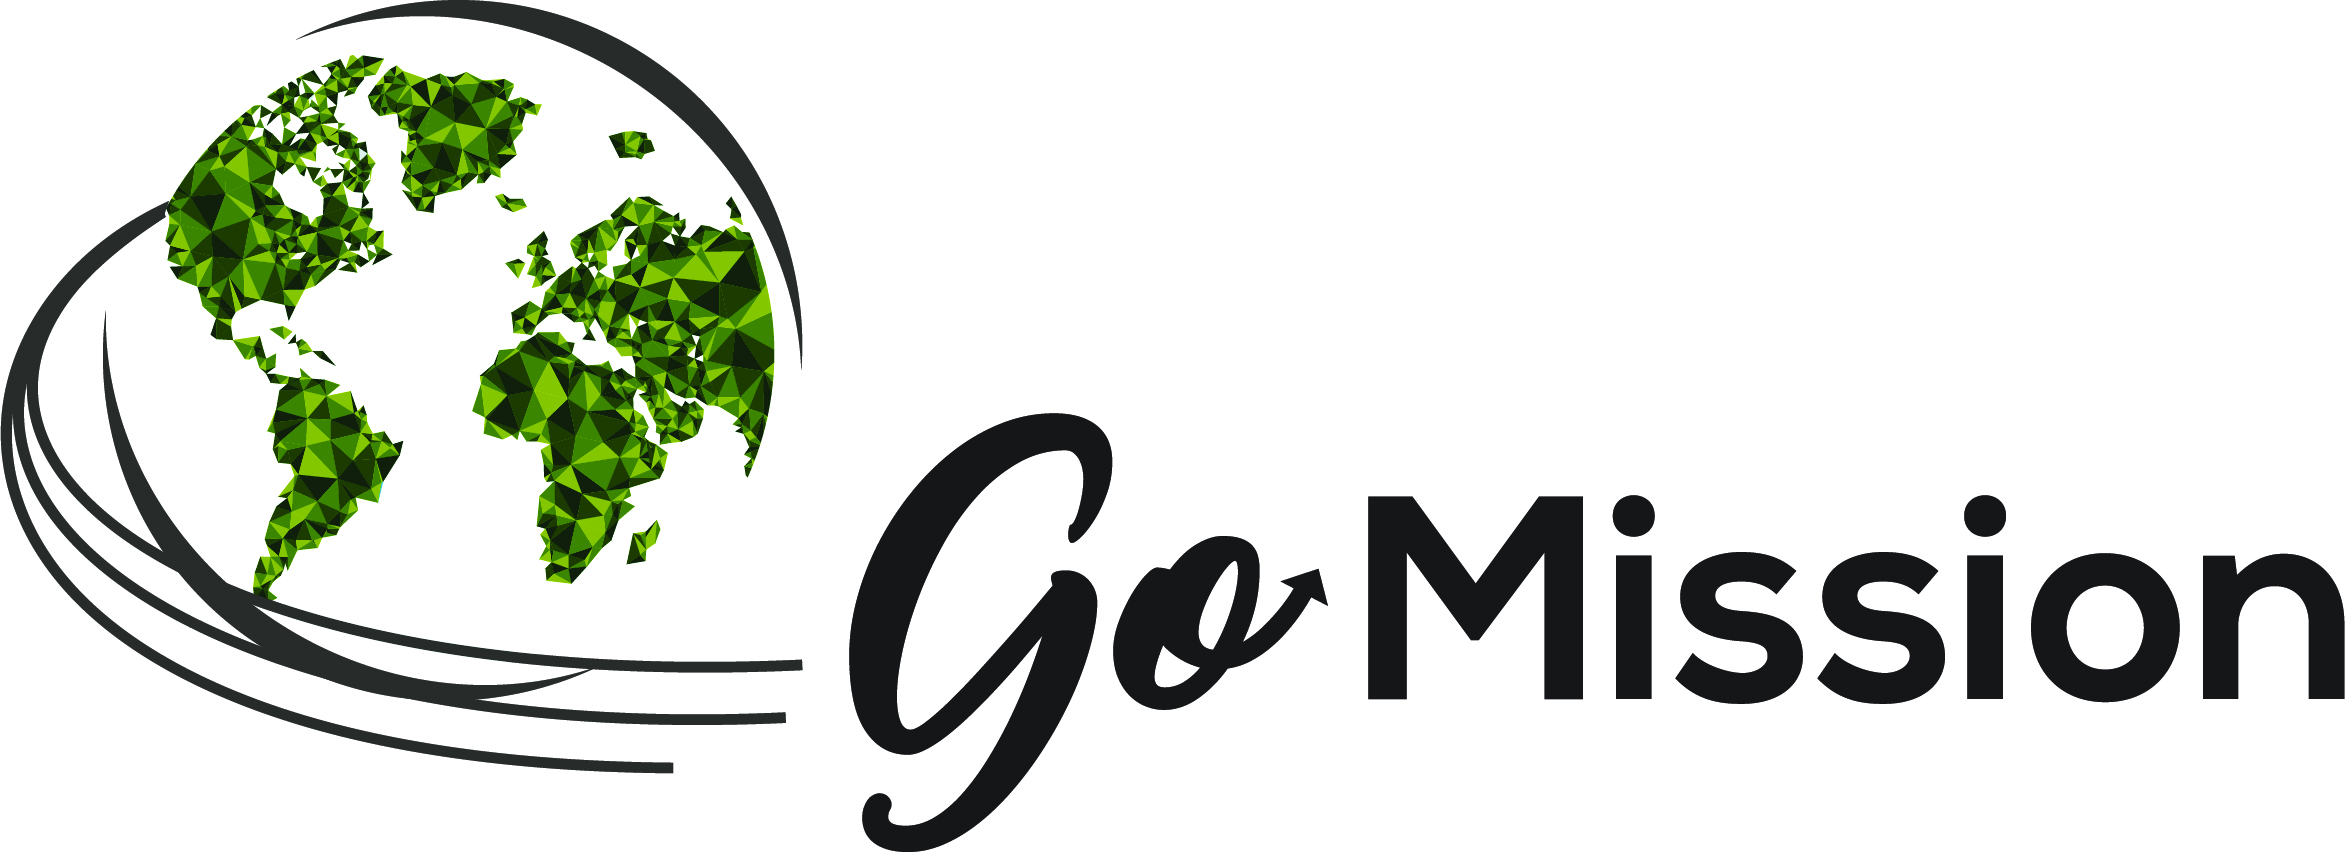 Go-Missions-Logo_JPEG